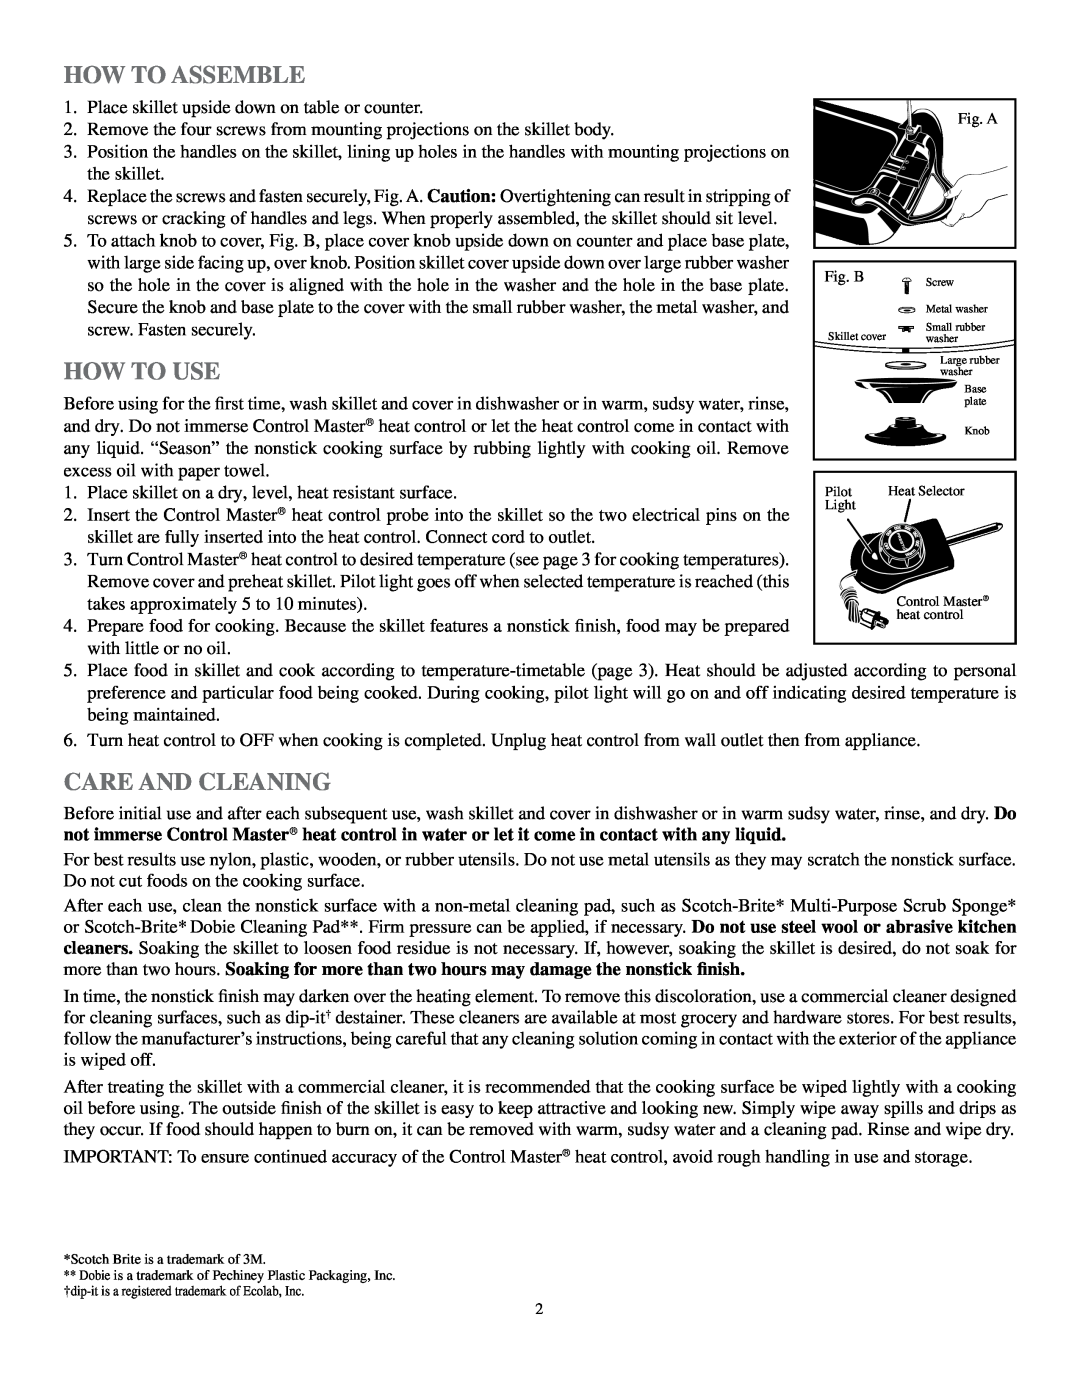 Presto 16-inch Electric Skillet manual 